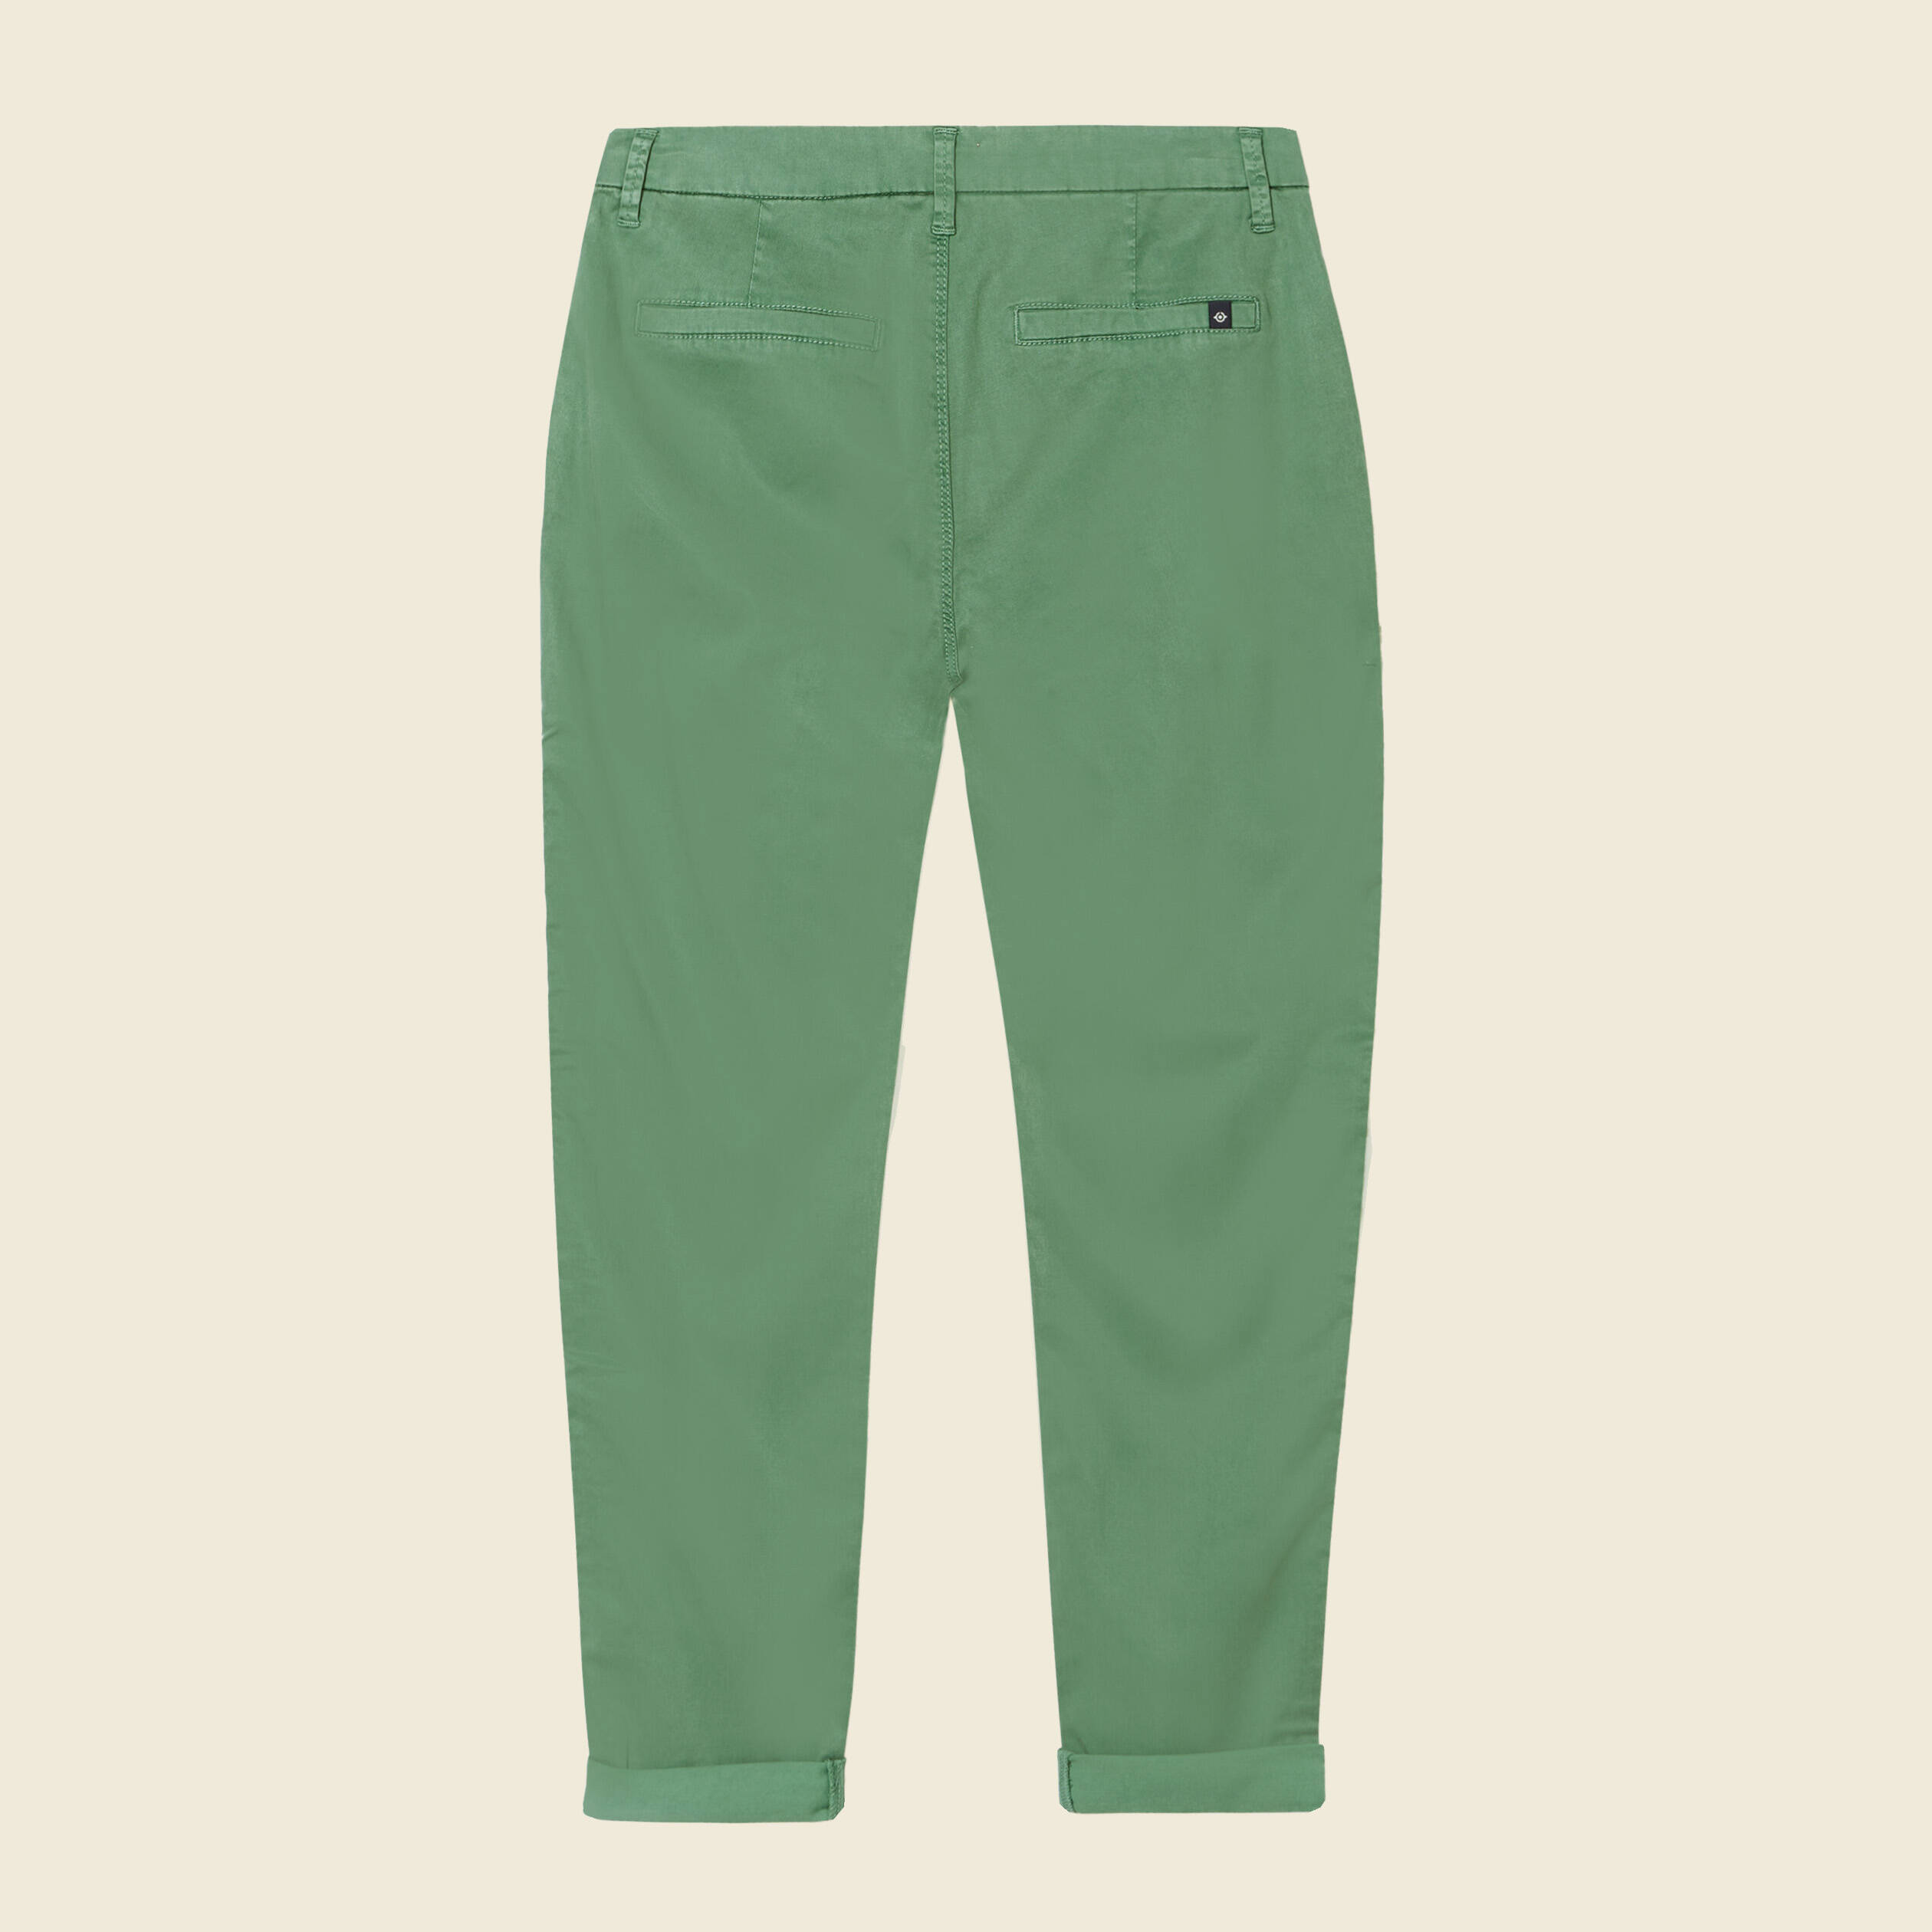 Fashion Pantalon Chino Nouveau Style Vert - Prix pas cher